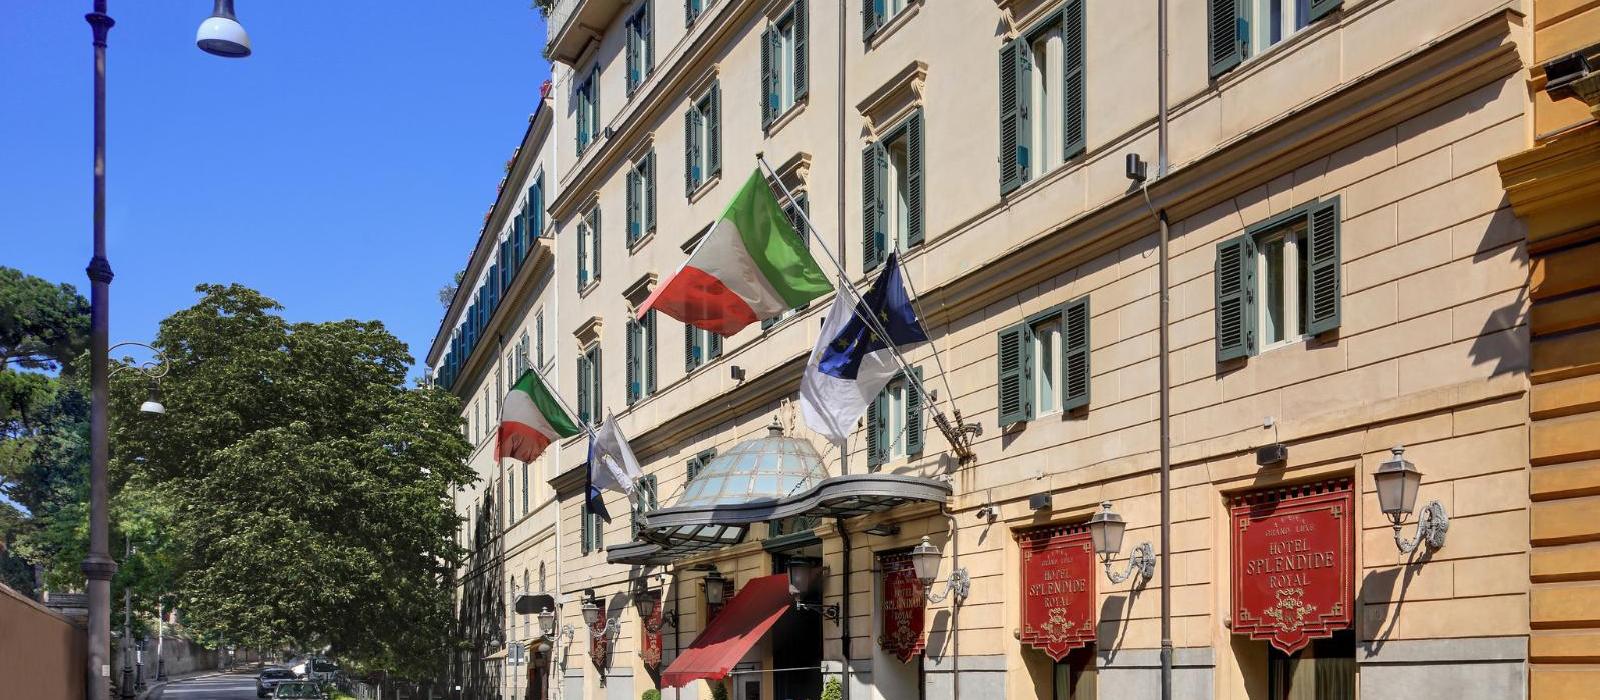 罗马斯普莱迪德皇家饭店(Hotel Splendide Royal Roma) 图片  www.lhw.cn